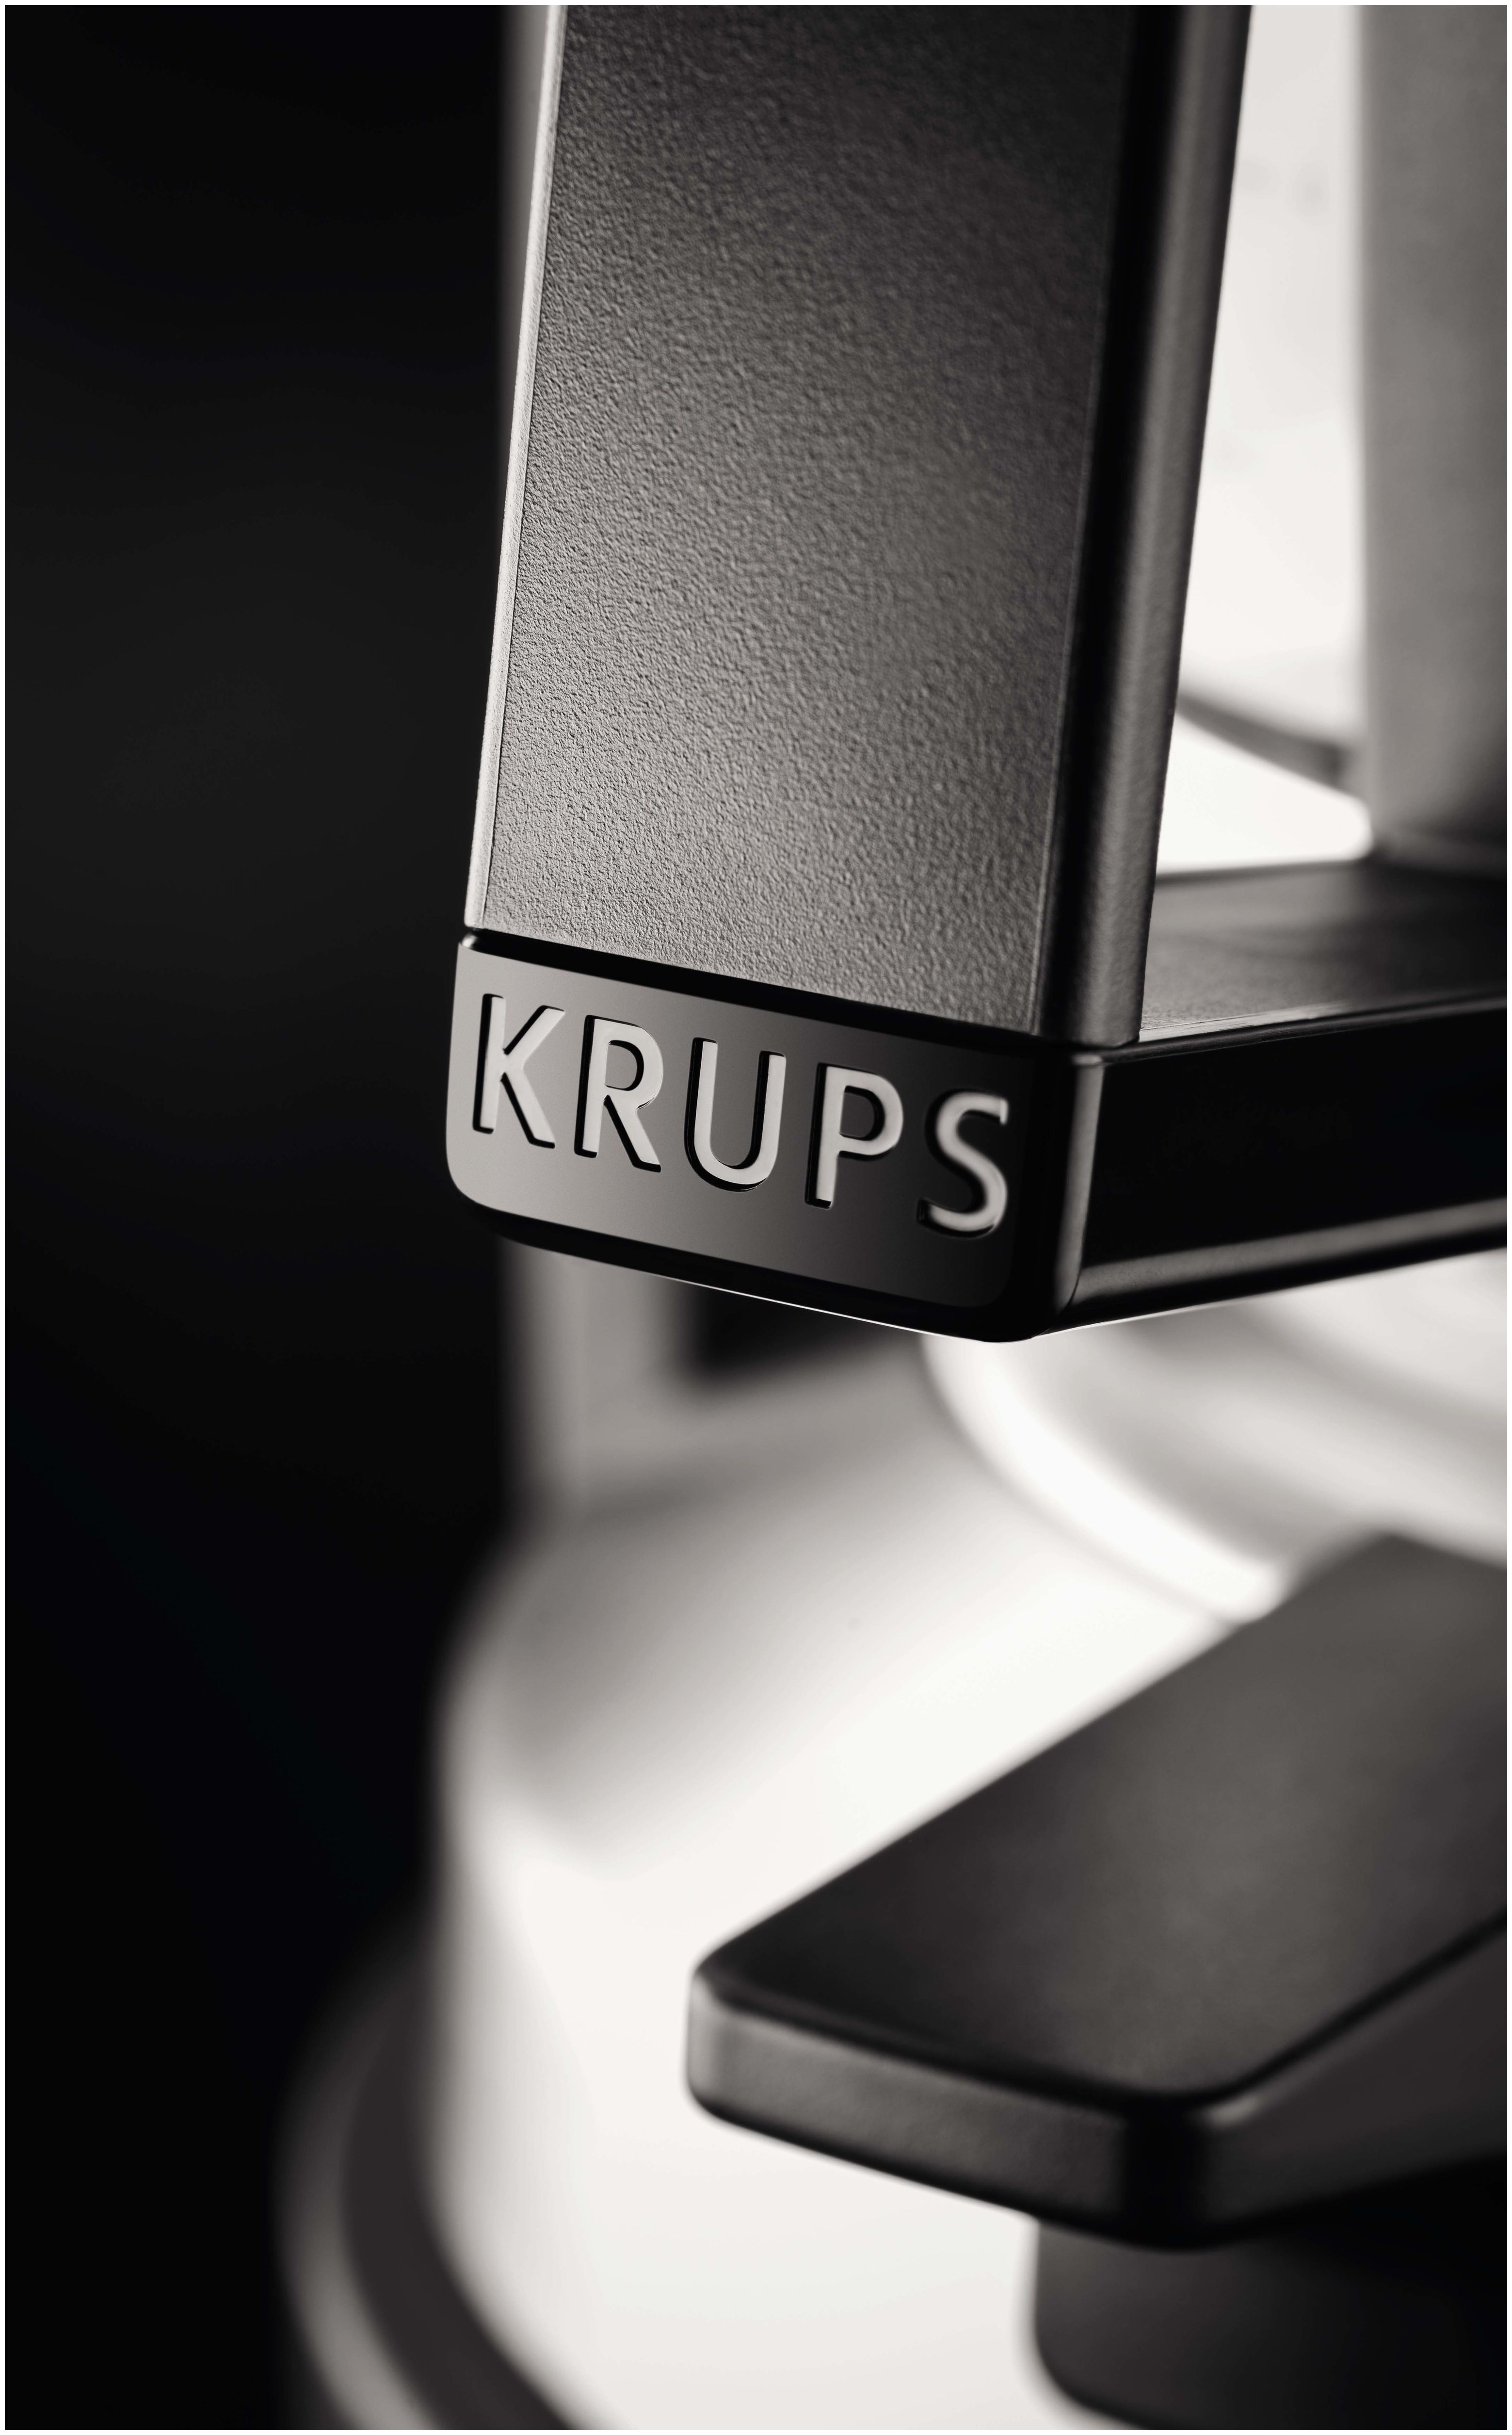 Krups von 8.2 Druckbrüh-Automat KM4689 1,2 l (Schwarz) expert Filterkaffeemaschine 12 Technomarkt Tassen T